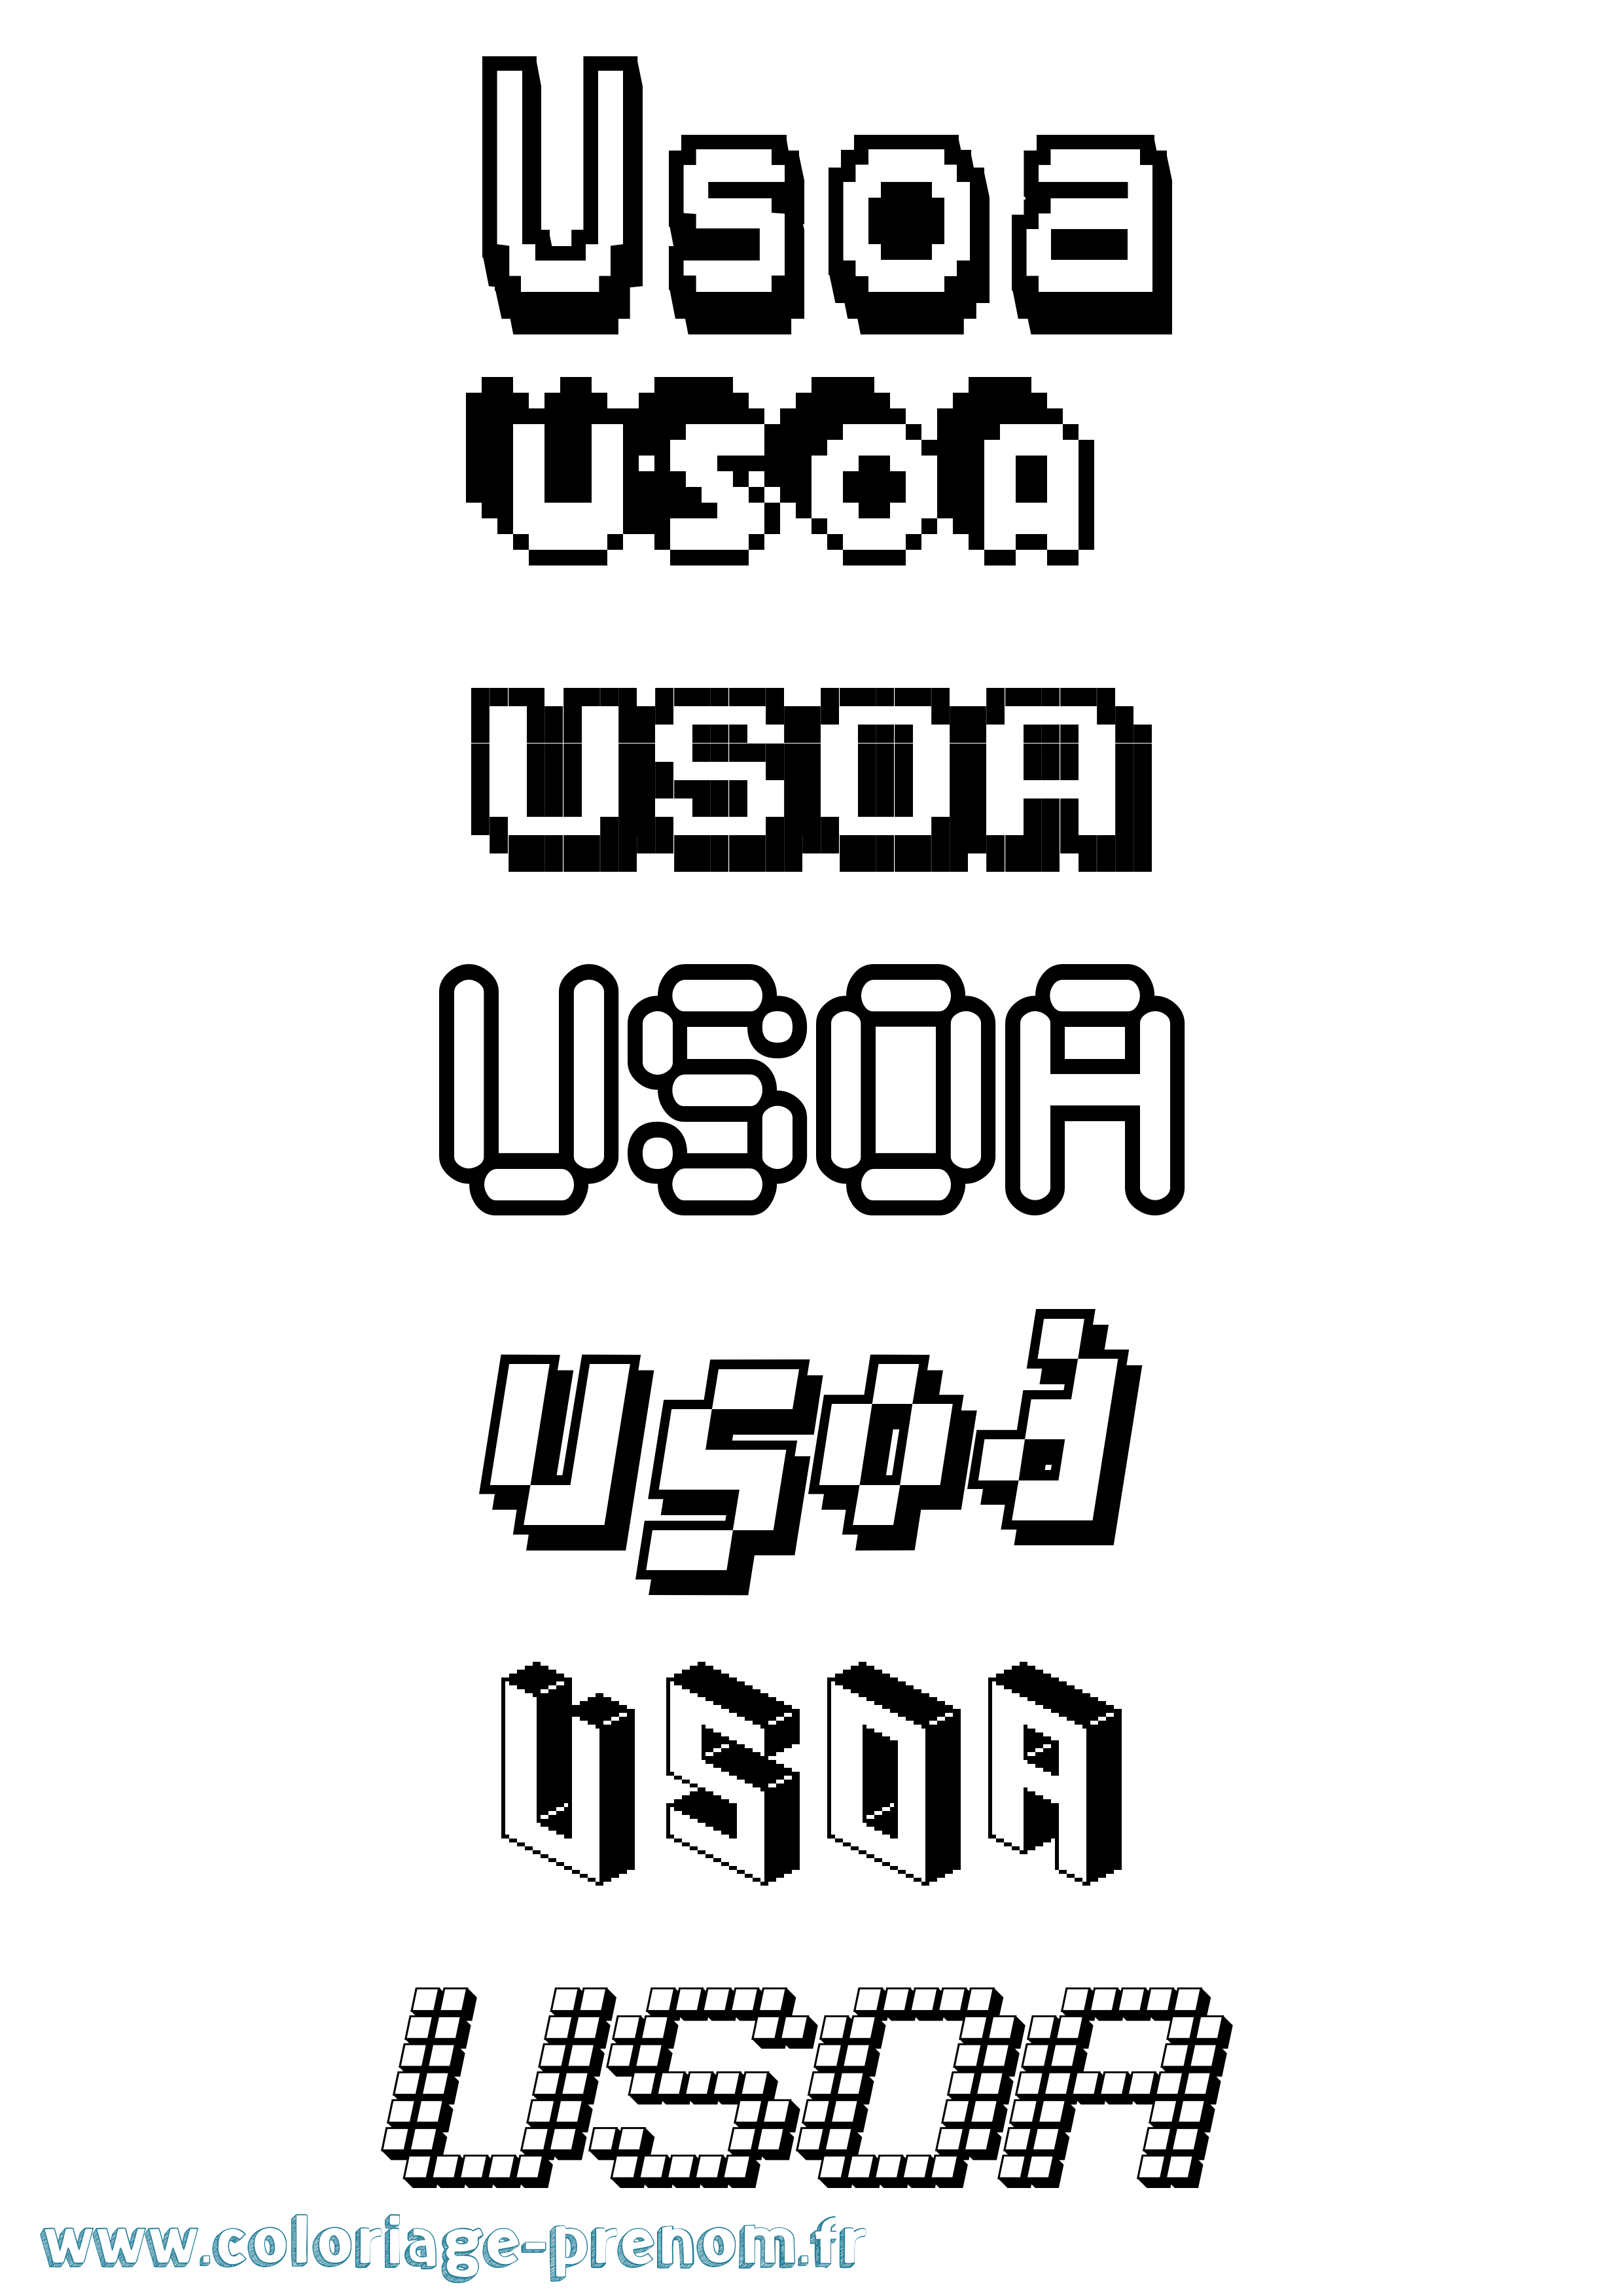 Coloriage prénom Usoa Pixel